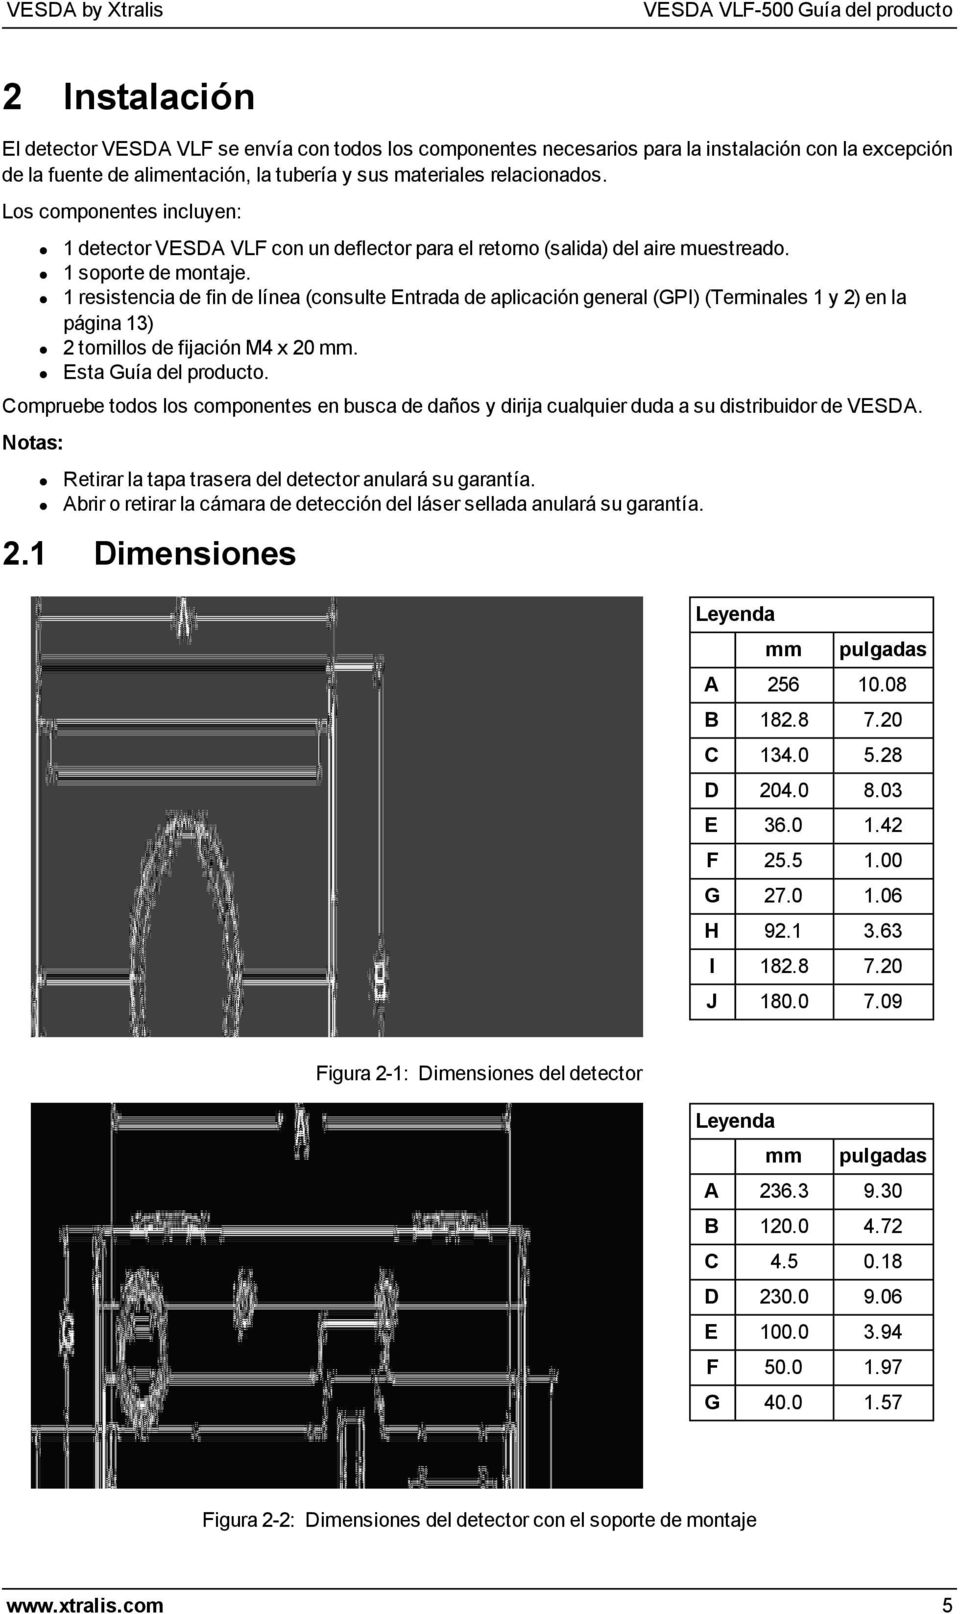 1 resistencia de fin de línea (consulte Entrada de aplicación general (GPI) (Terminales 1 y 2) en la página 13) 2 tornillos de fijación M4 x 20 mm. Esta Guía del producto.